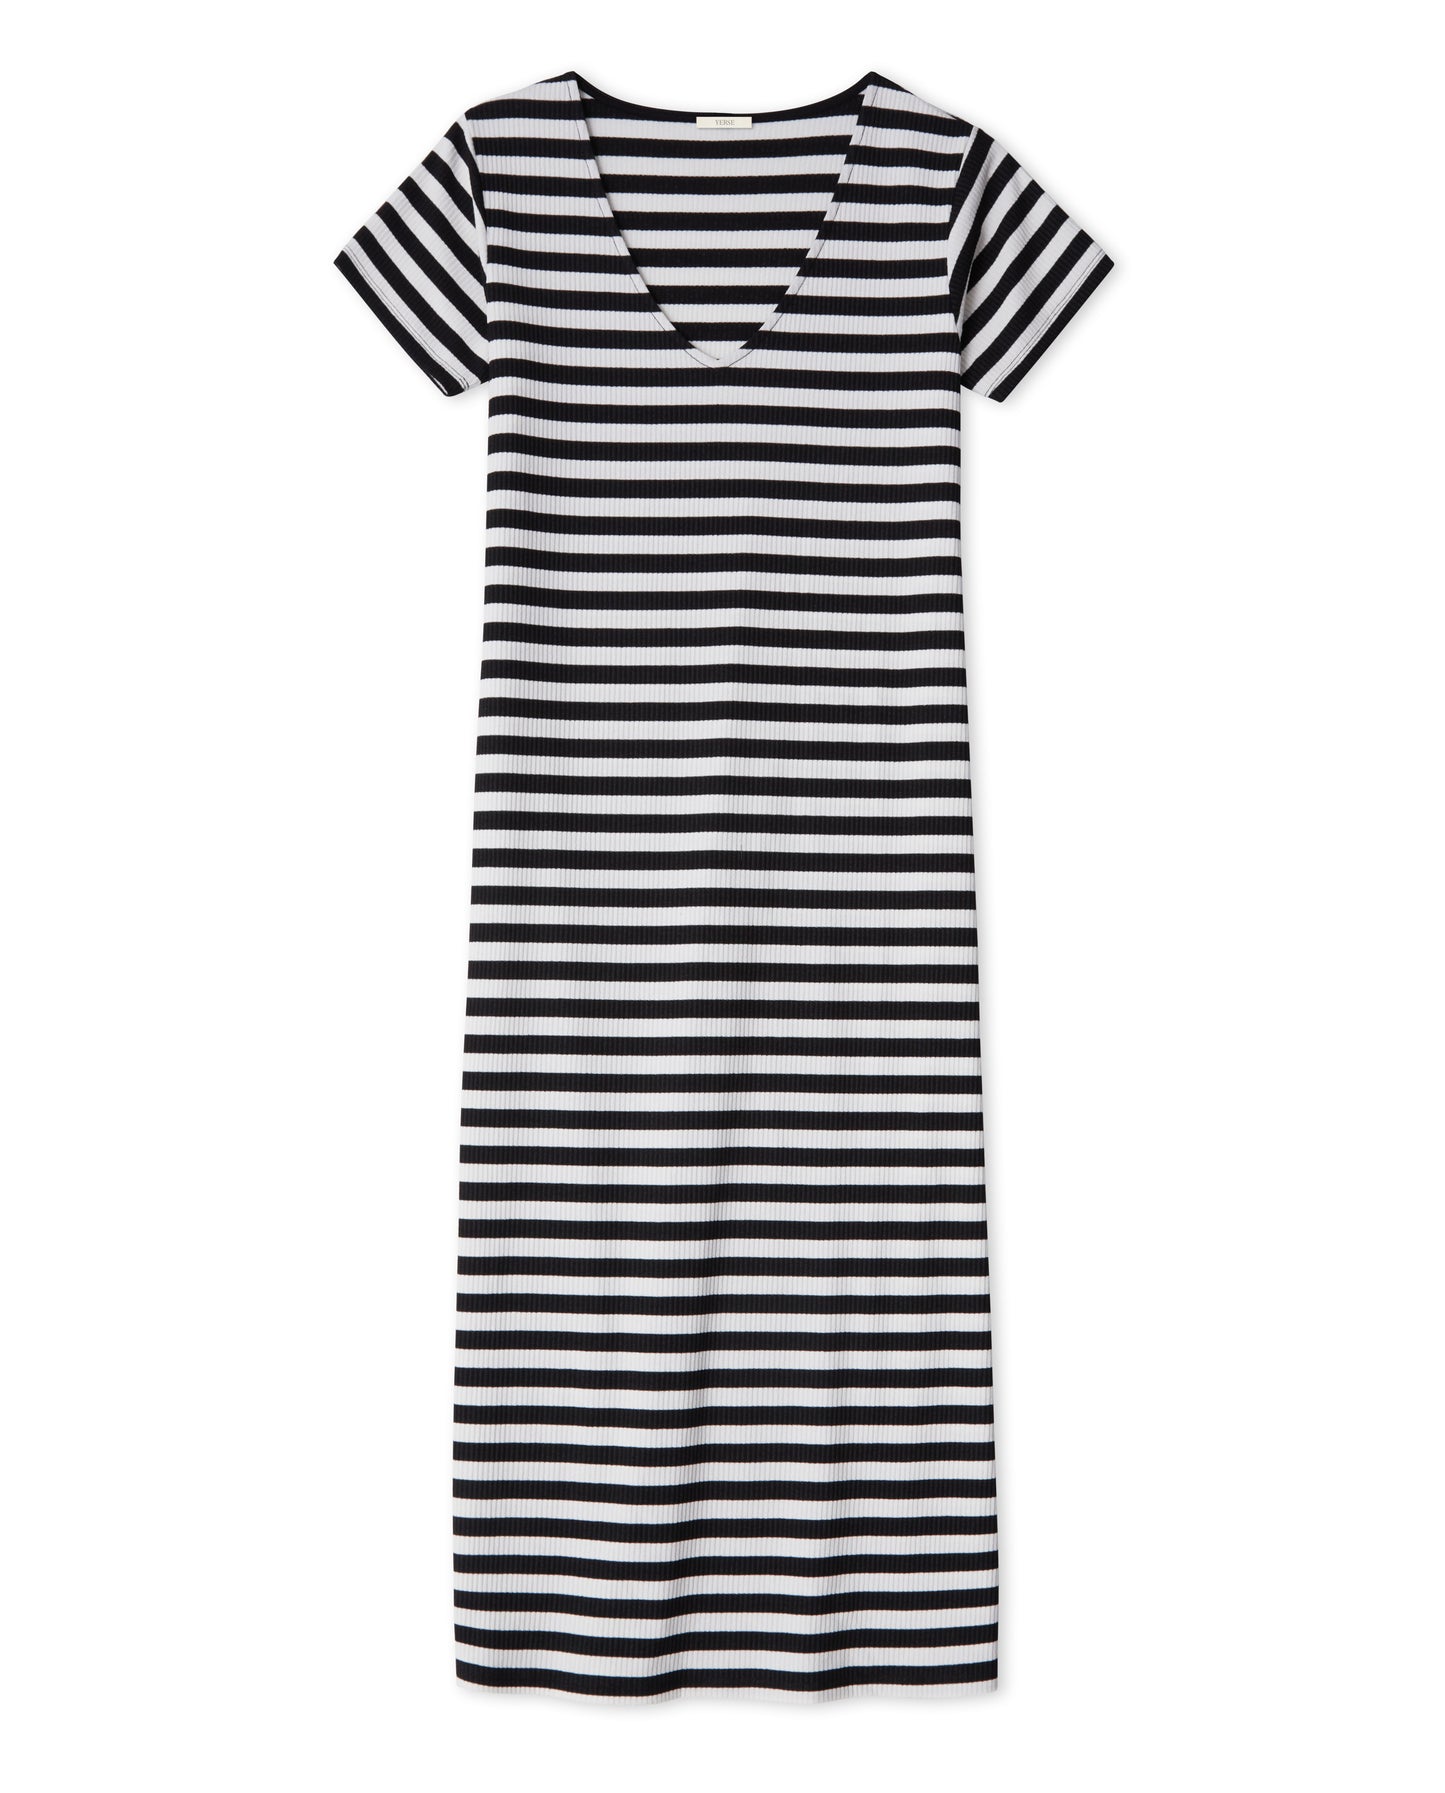 Yerse | Ecru & Black stripe Dress